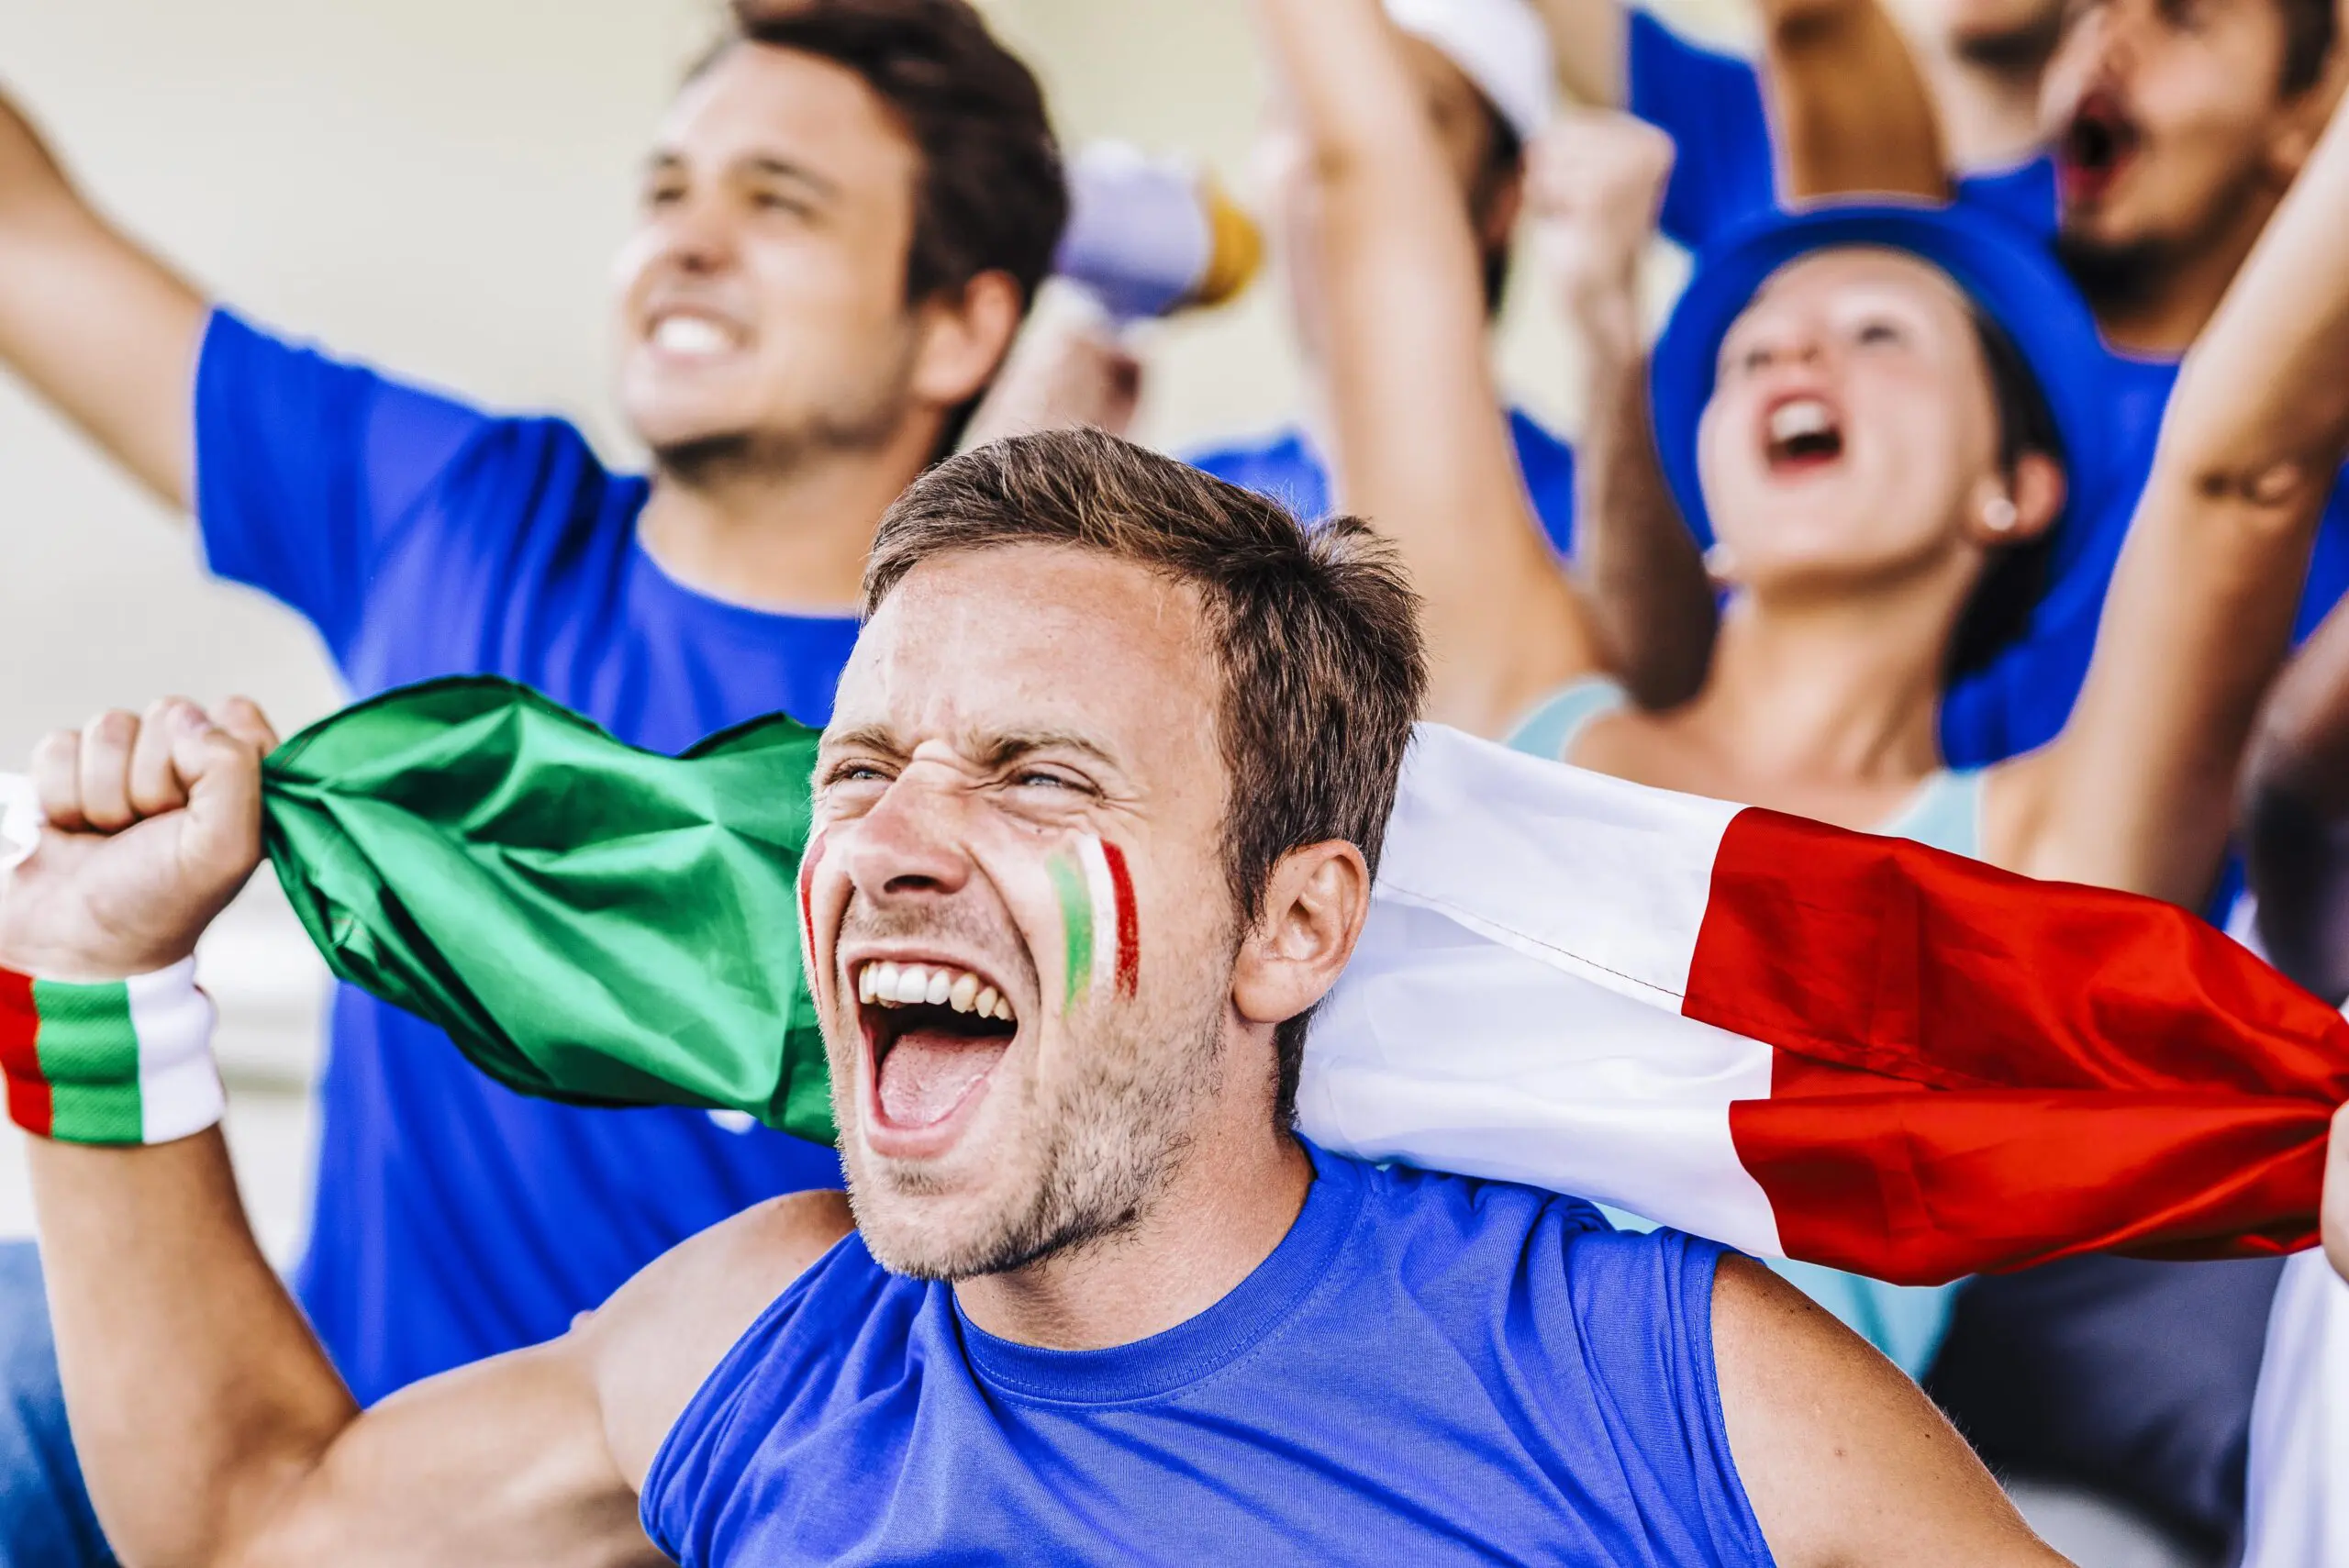 Europei di calcio: boom di ricerche per la maglia dell'Italia su Amazon thumbnail